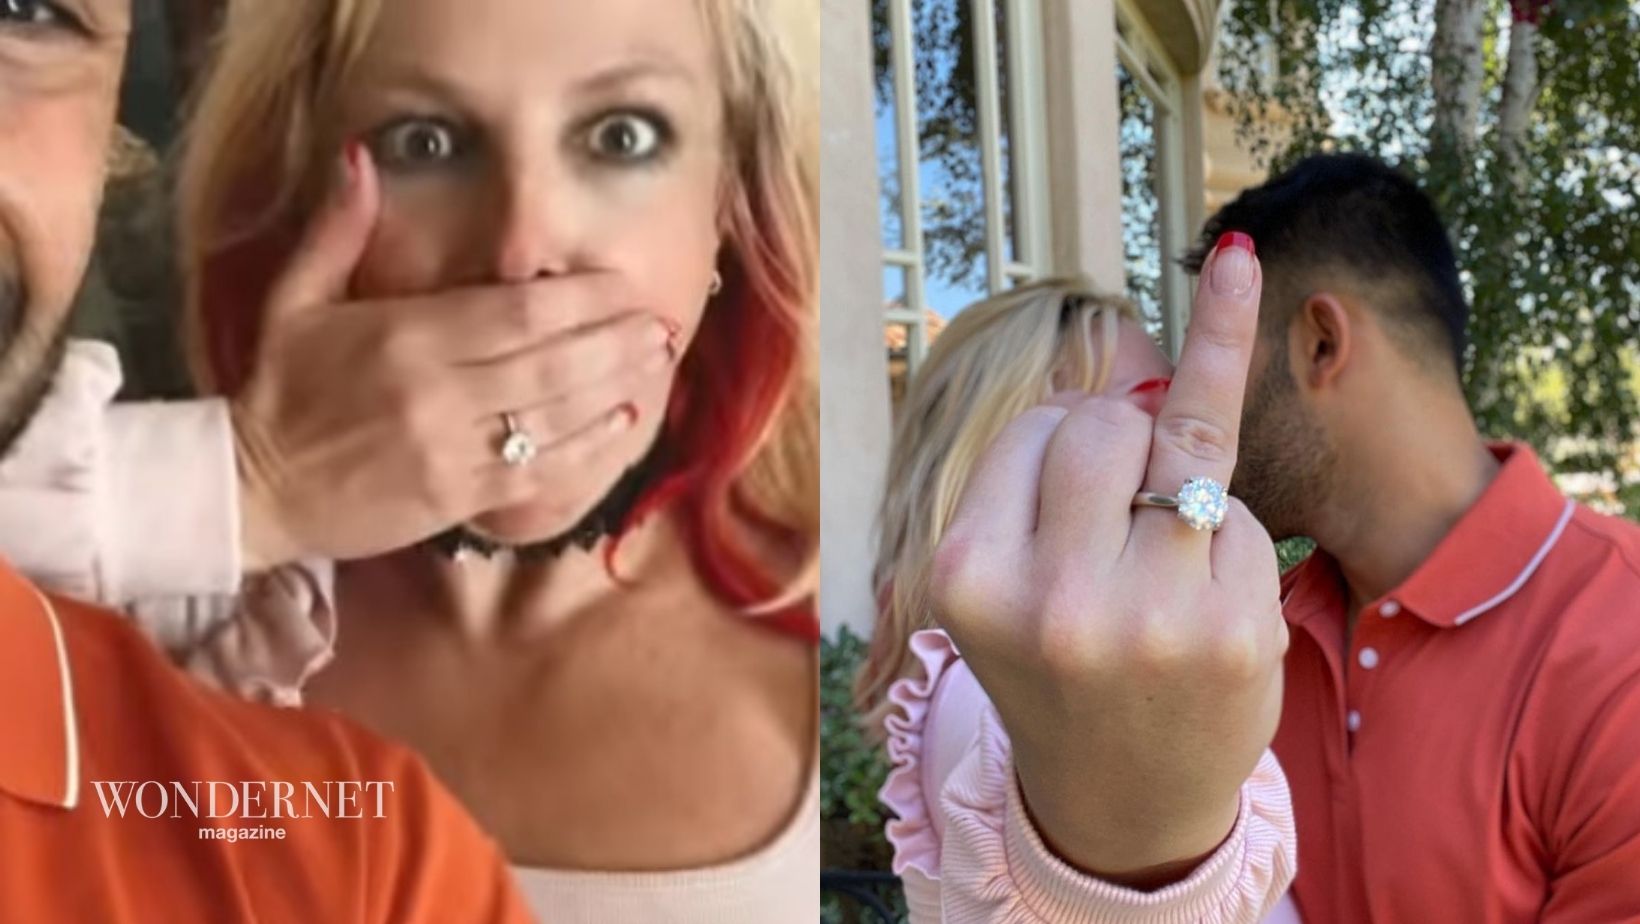 Britney Spears annuncia il fidanzamento con Sam Asghari